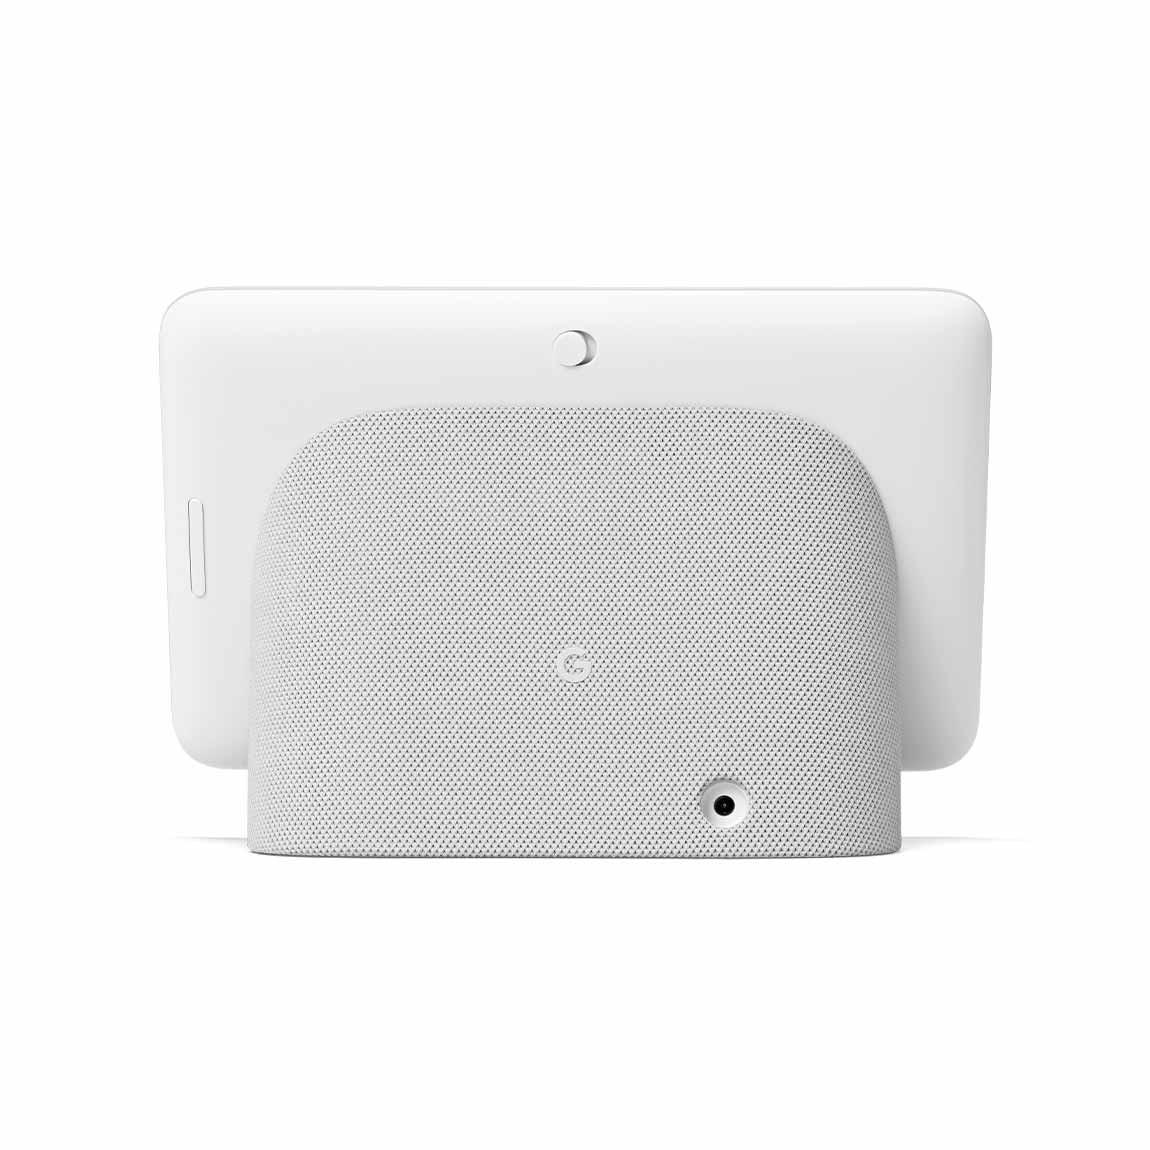 Google Nest Hub (2. Generation) 2er-Pack - Smart Display mit Sprachsteuerung - von hinten